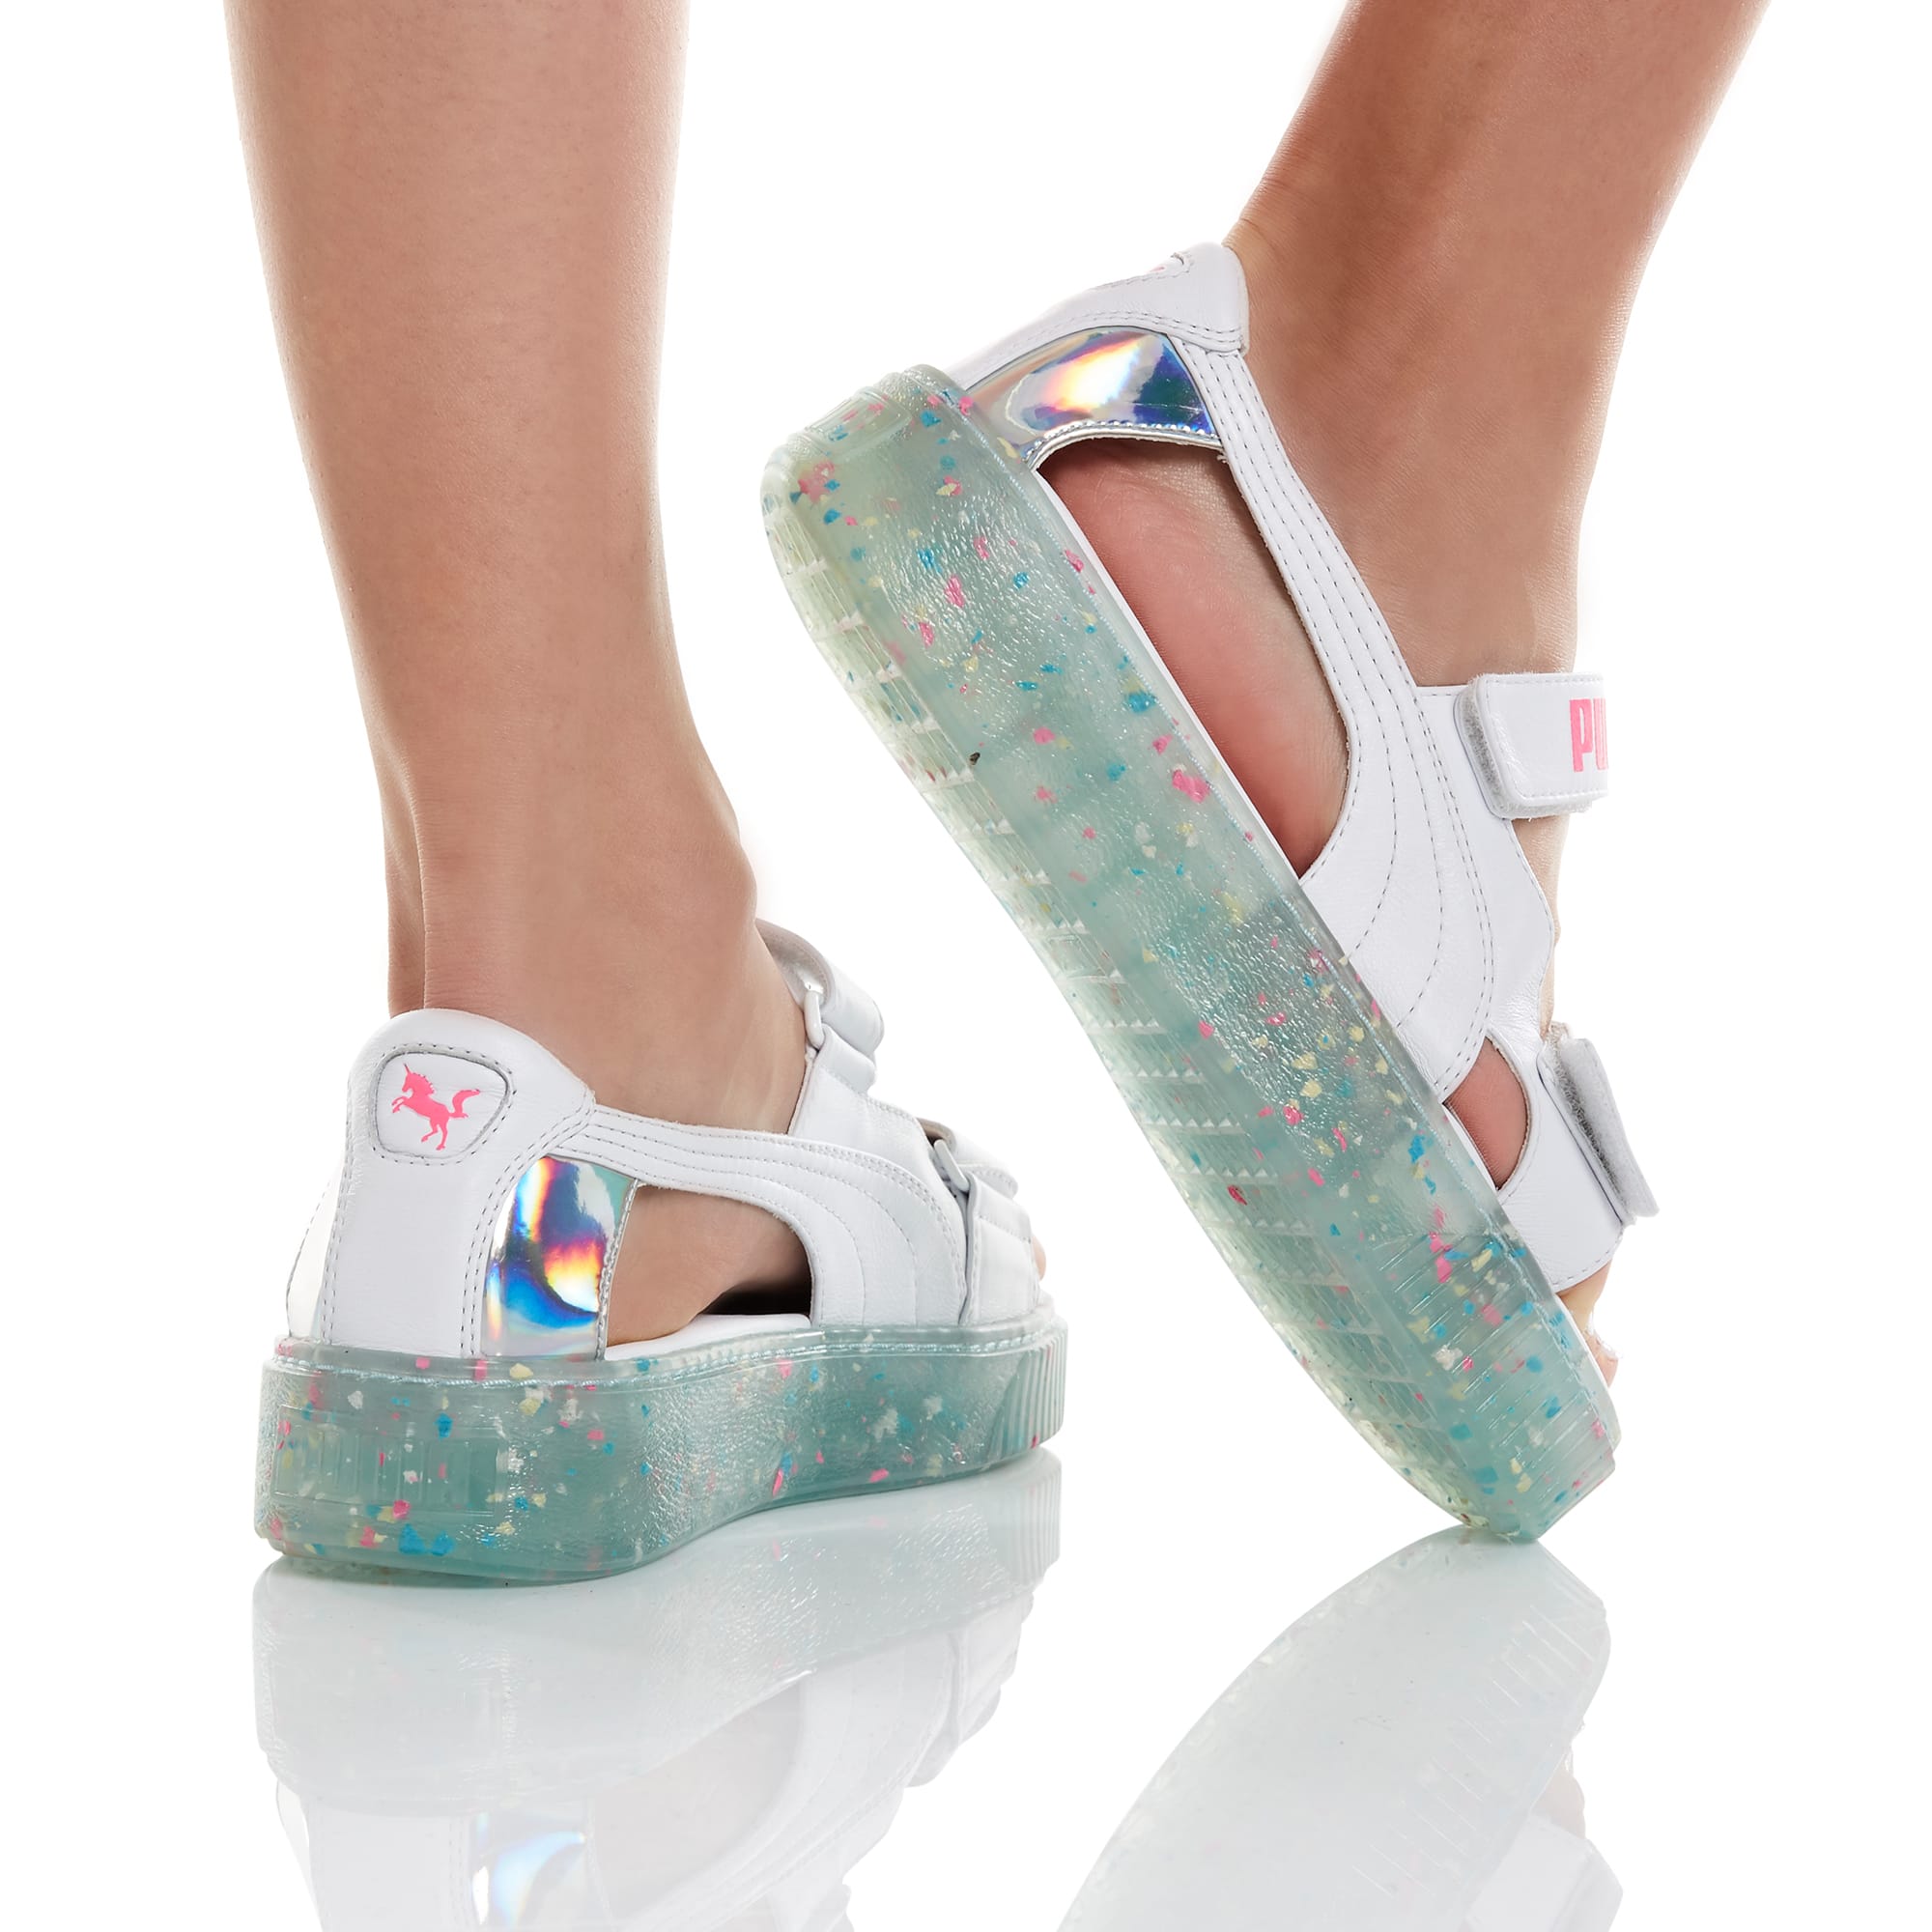 puma sophia webster platform sandals